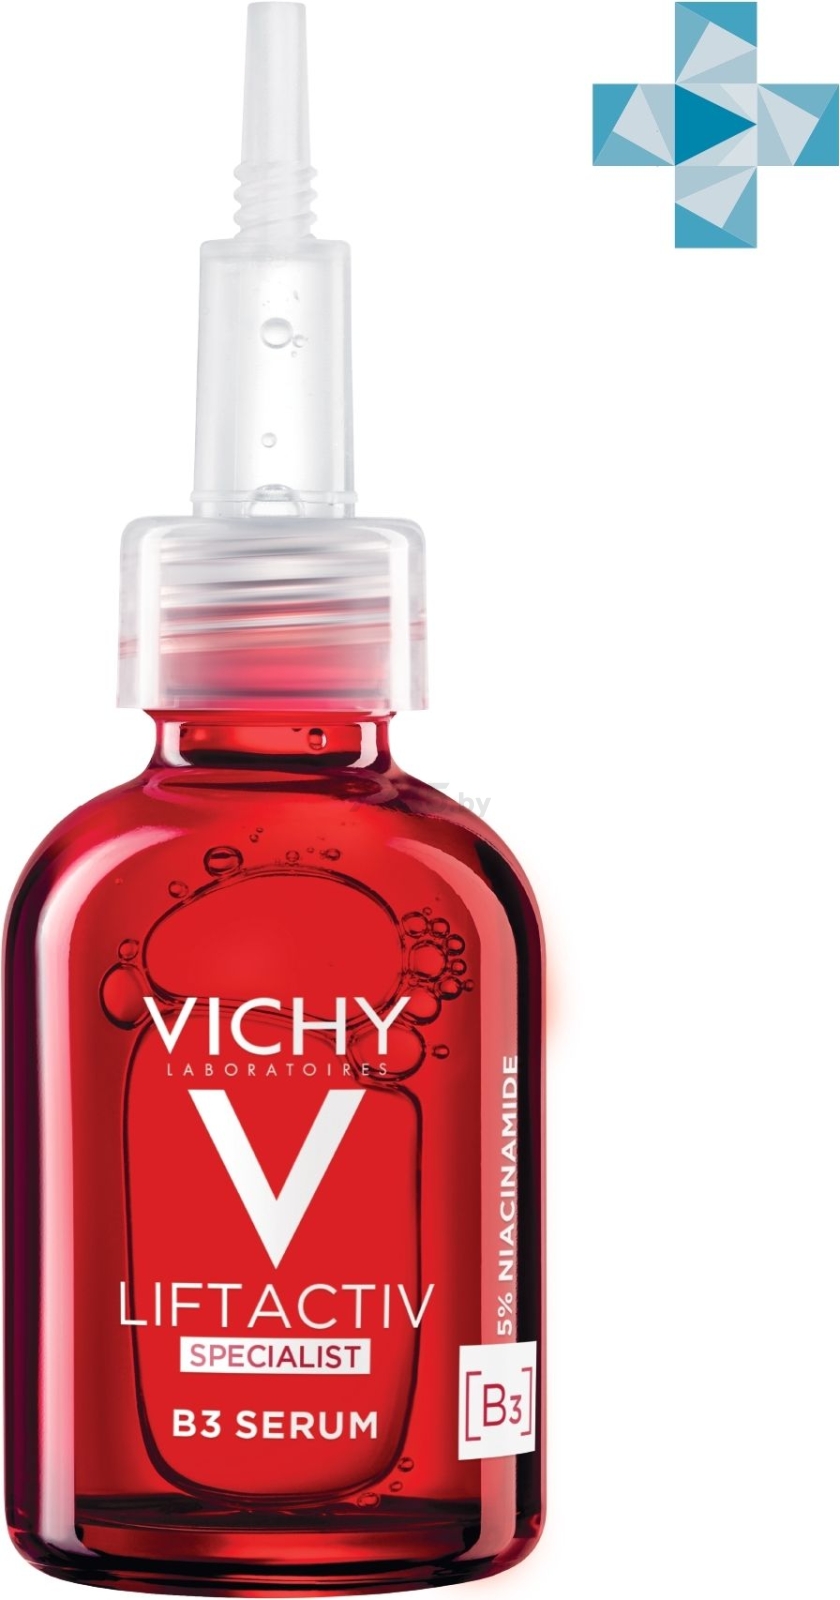 Сыворотка VICHY Liftactiv Specialist комплексного действия с витамином В3 против пигментации и морщин 30 мл (0370355108) - Фото 2